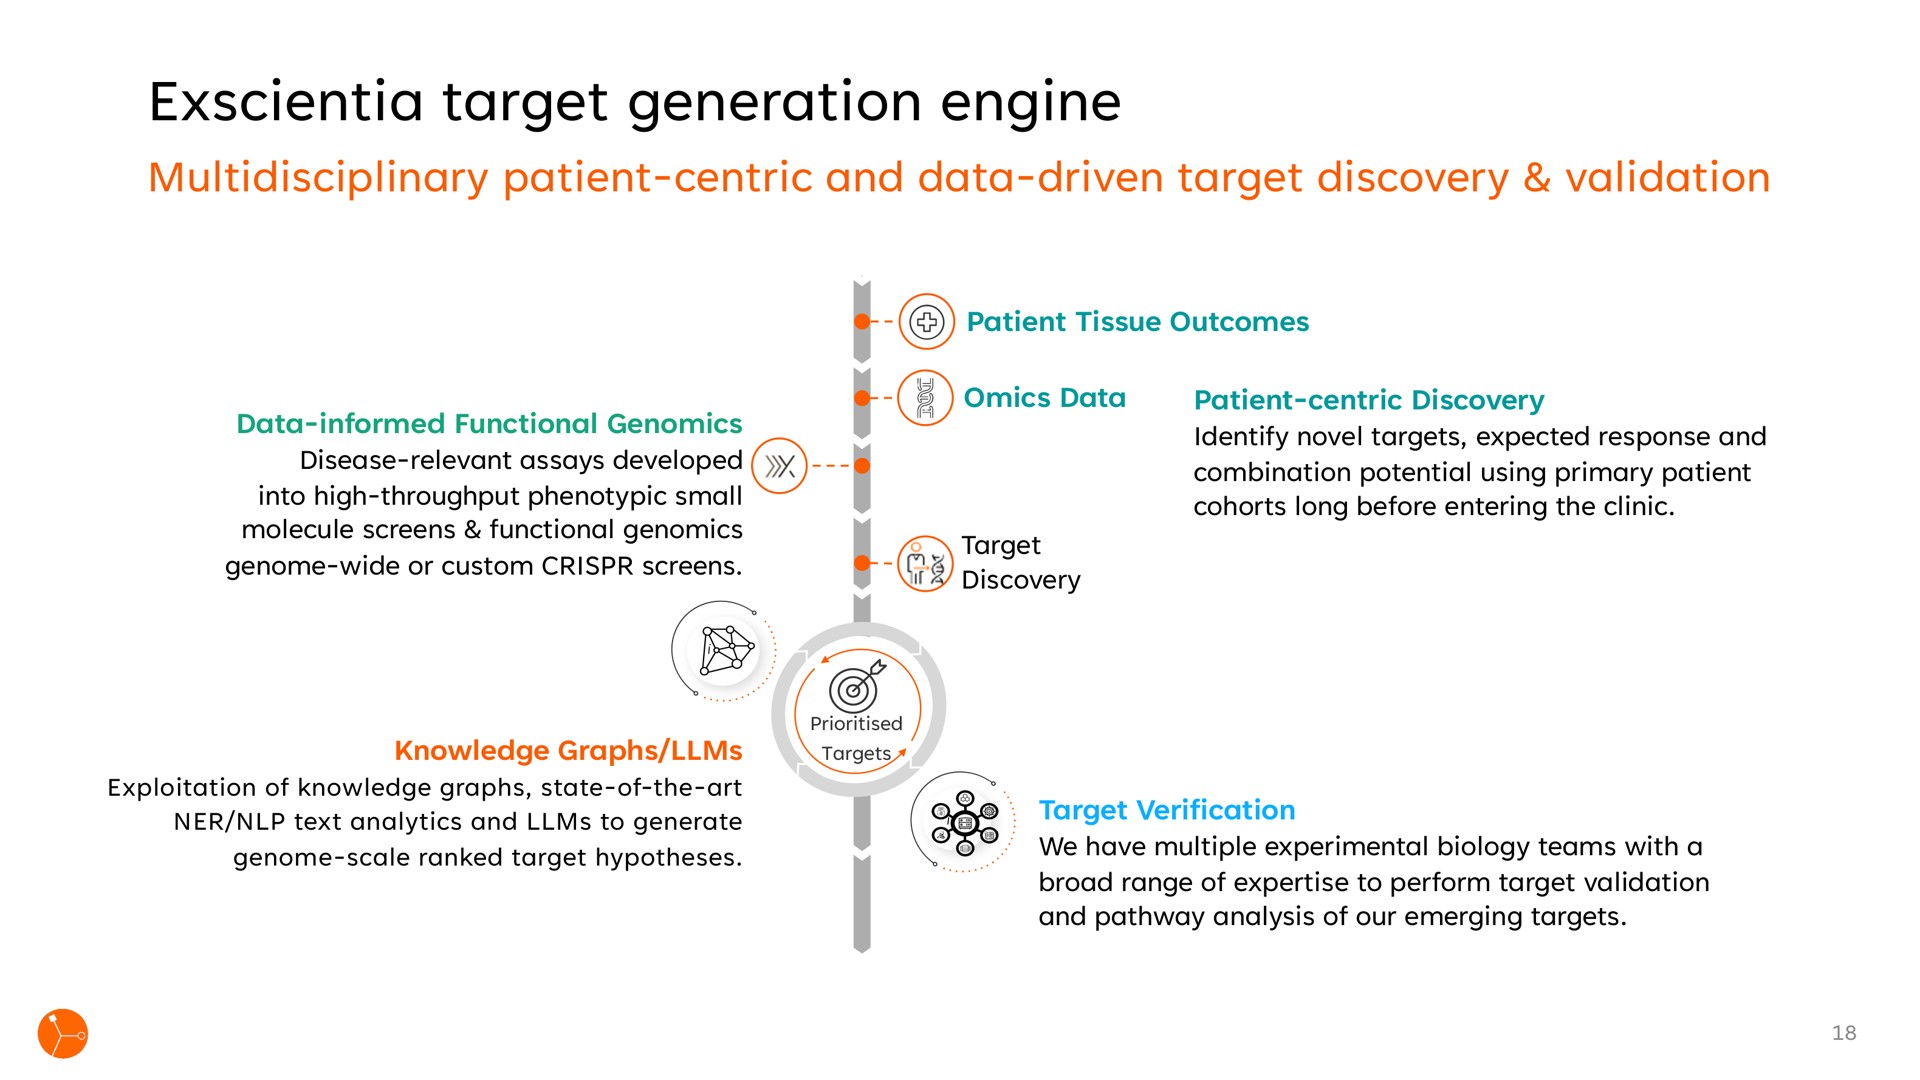 target generation engine | Exscientia